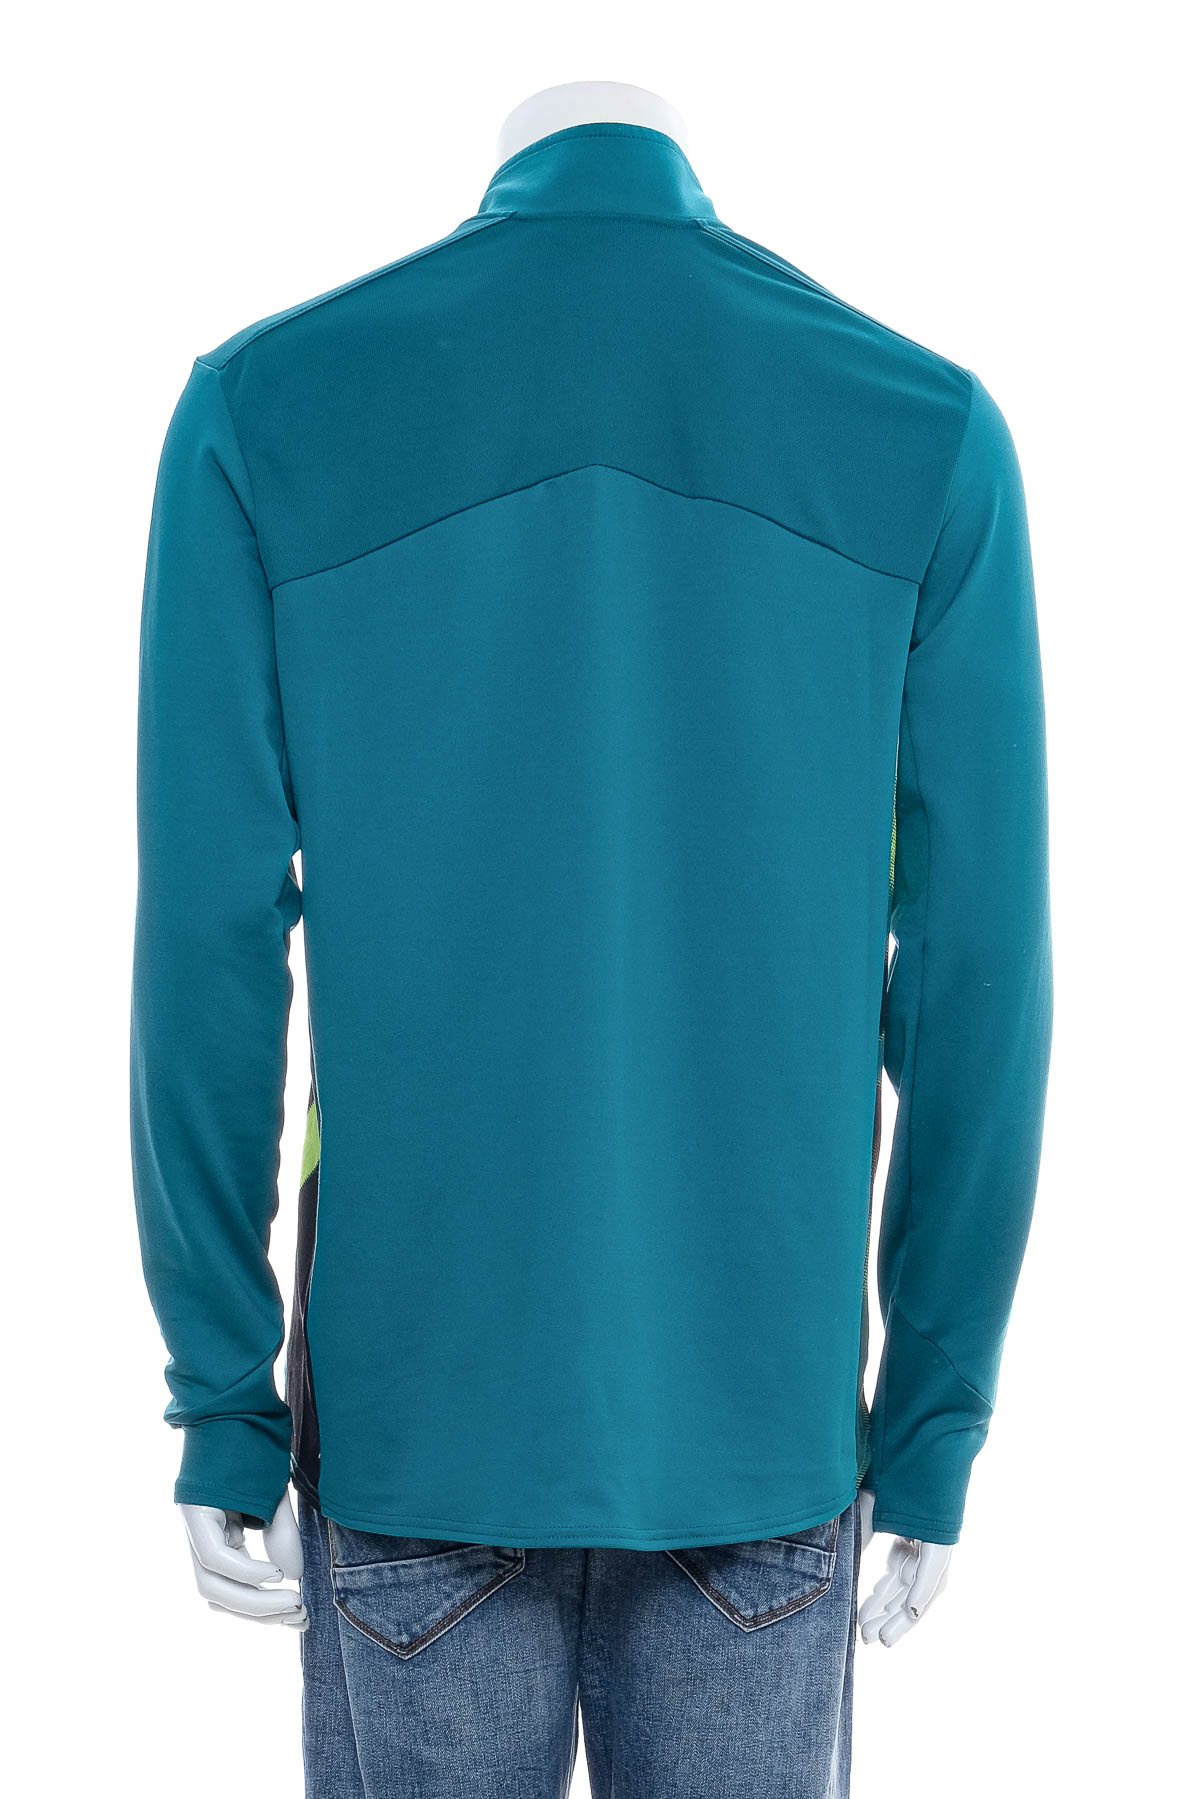 Men's sport blouse - Umbro - 1